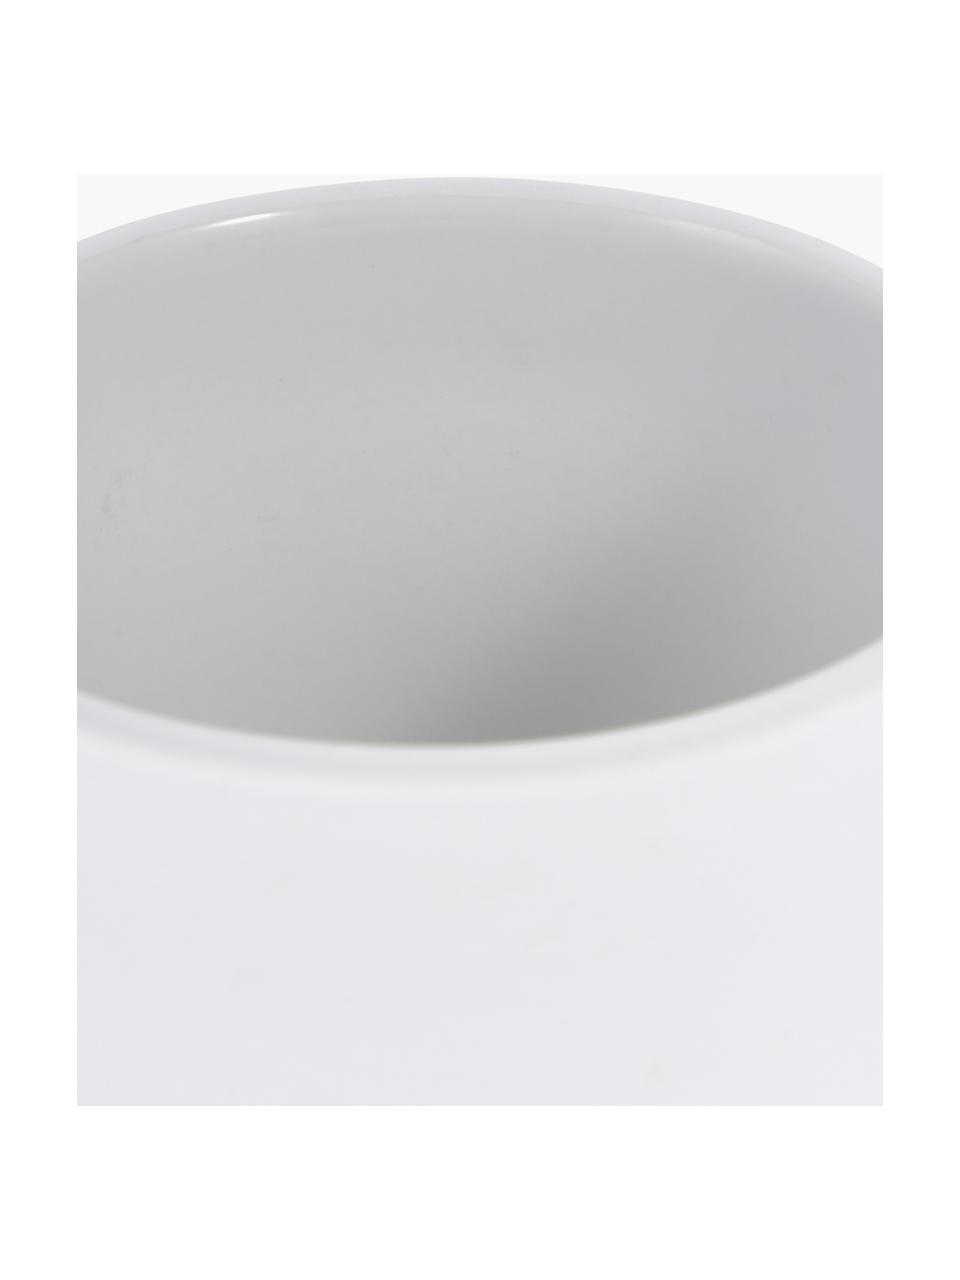 Seifenspender Ume mit Soft-Touch-Oberfläche, Behälter: Steingut überzogen mit So, Weiß, Ø 8 x H 13 cm